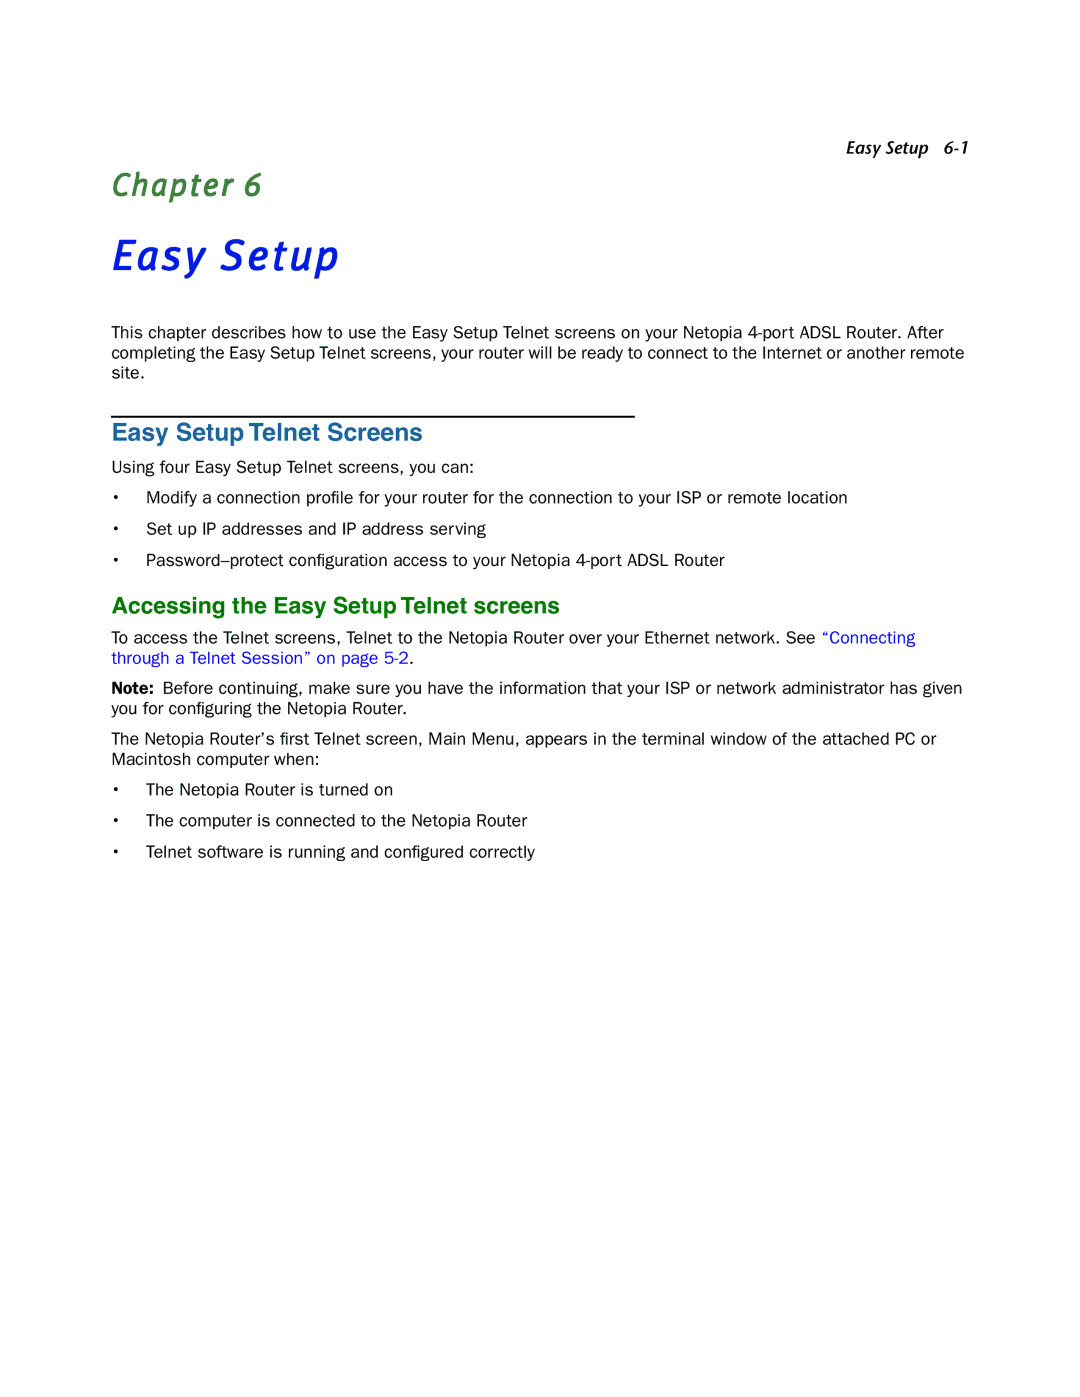 Netopia 3346NENT, 3346N-ENT manual Easy Setup Telnet Screens 